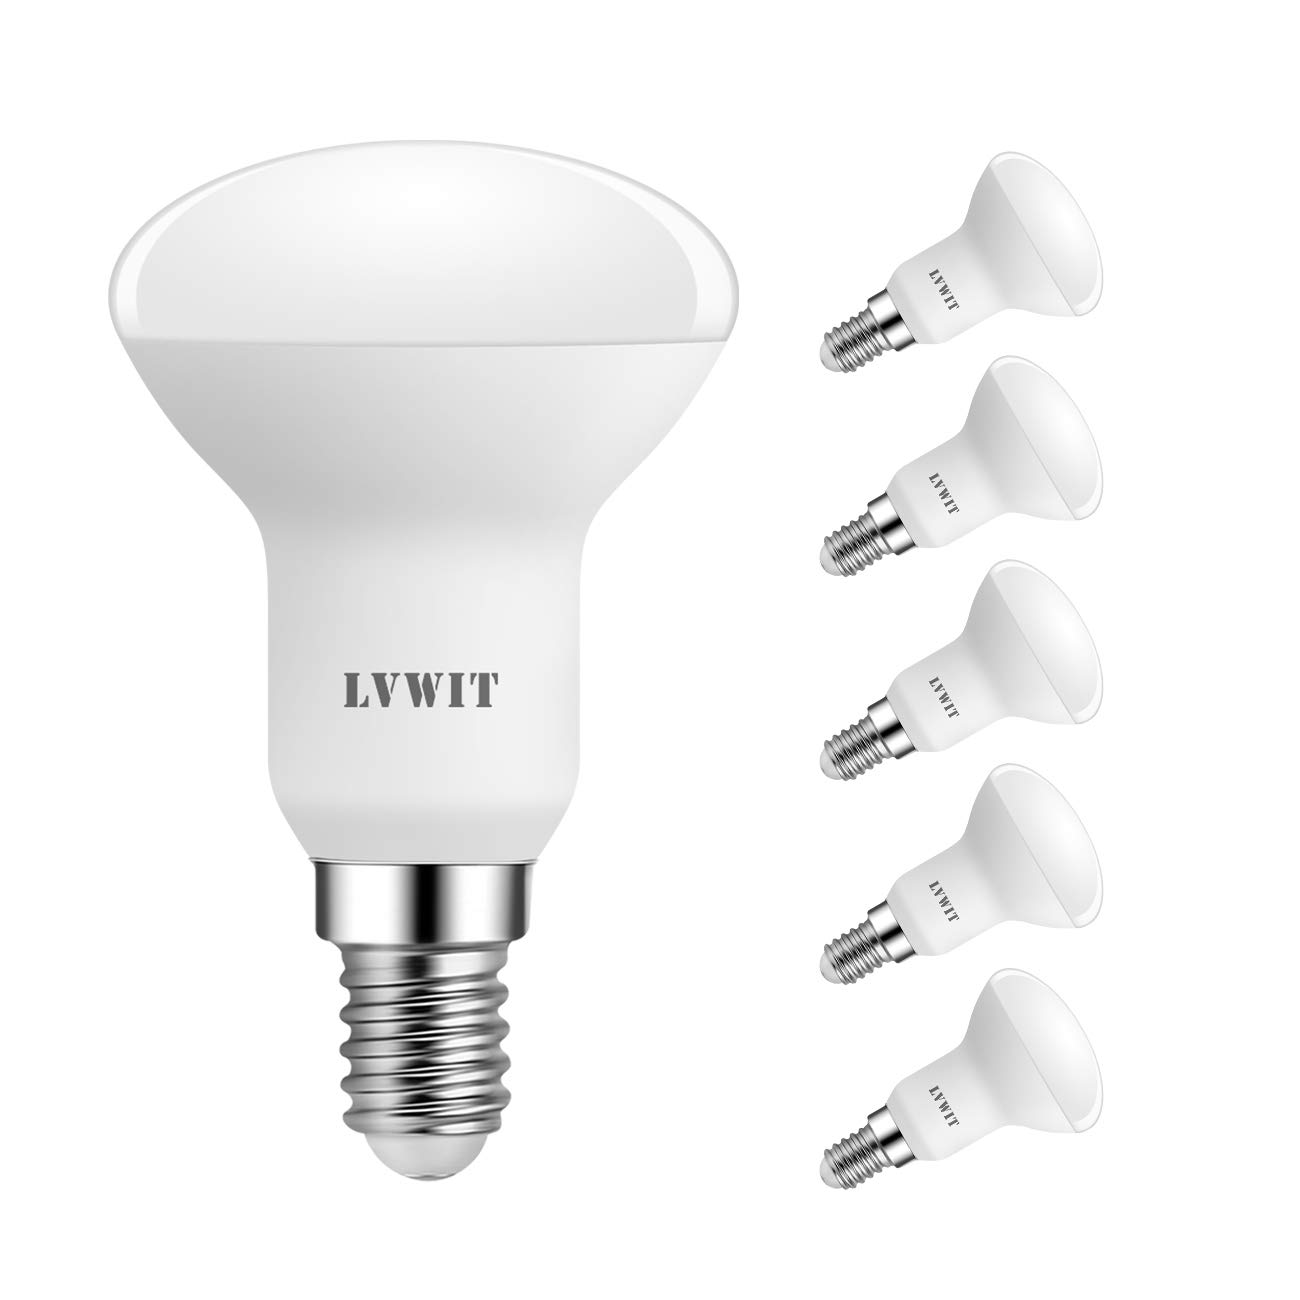 Populaire LVWIT 5W Reflecteur Ampoules LED E14 R50, Equ